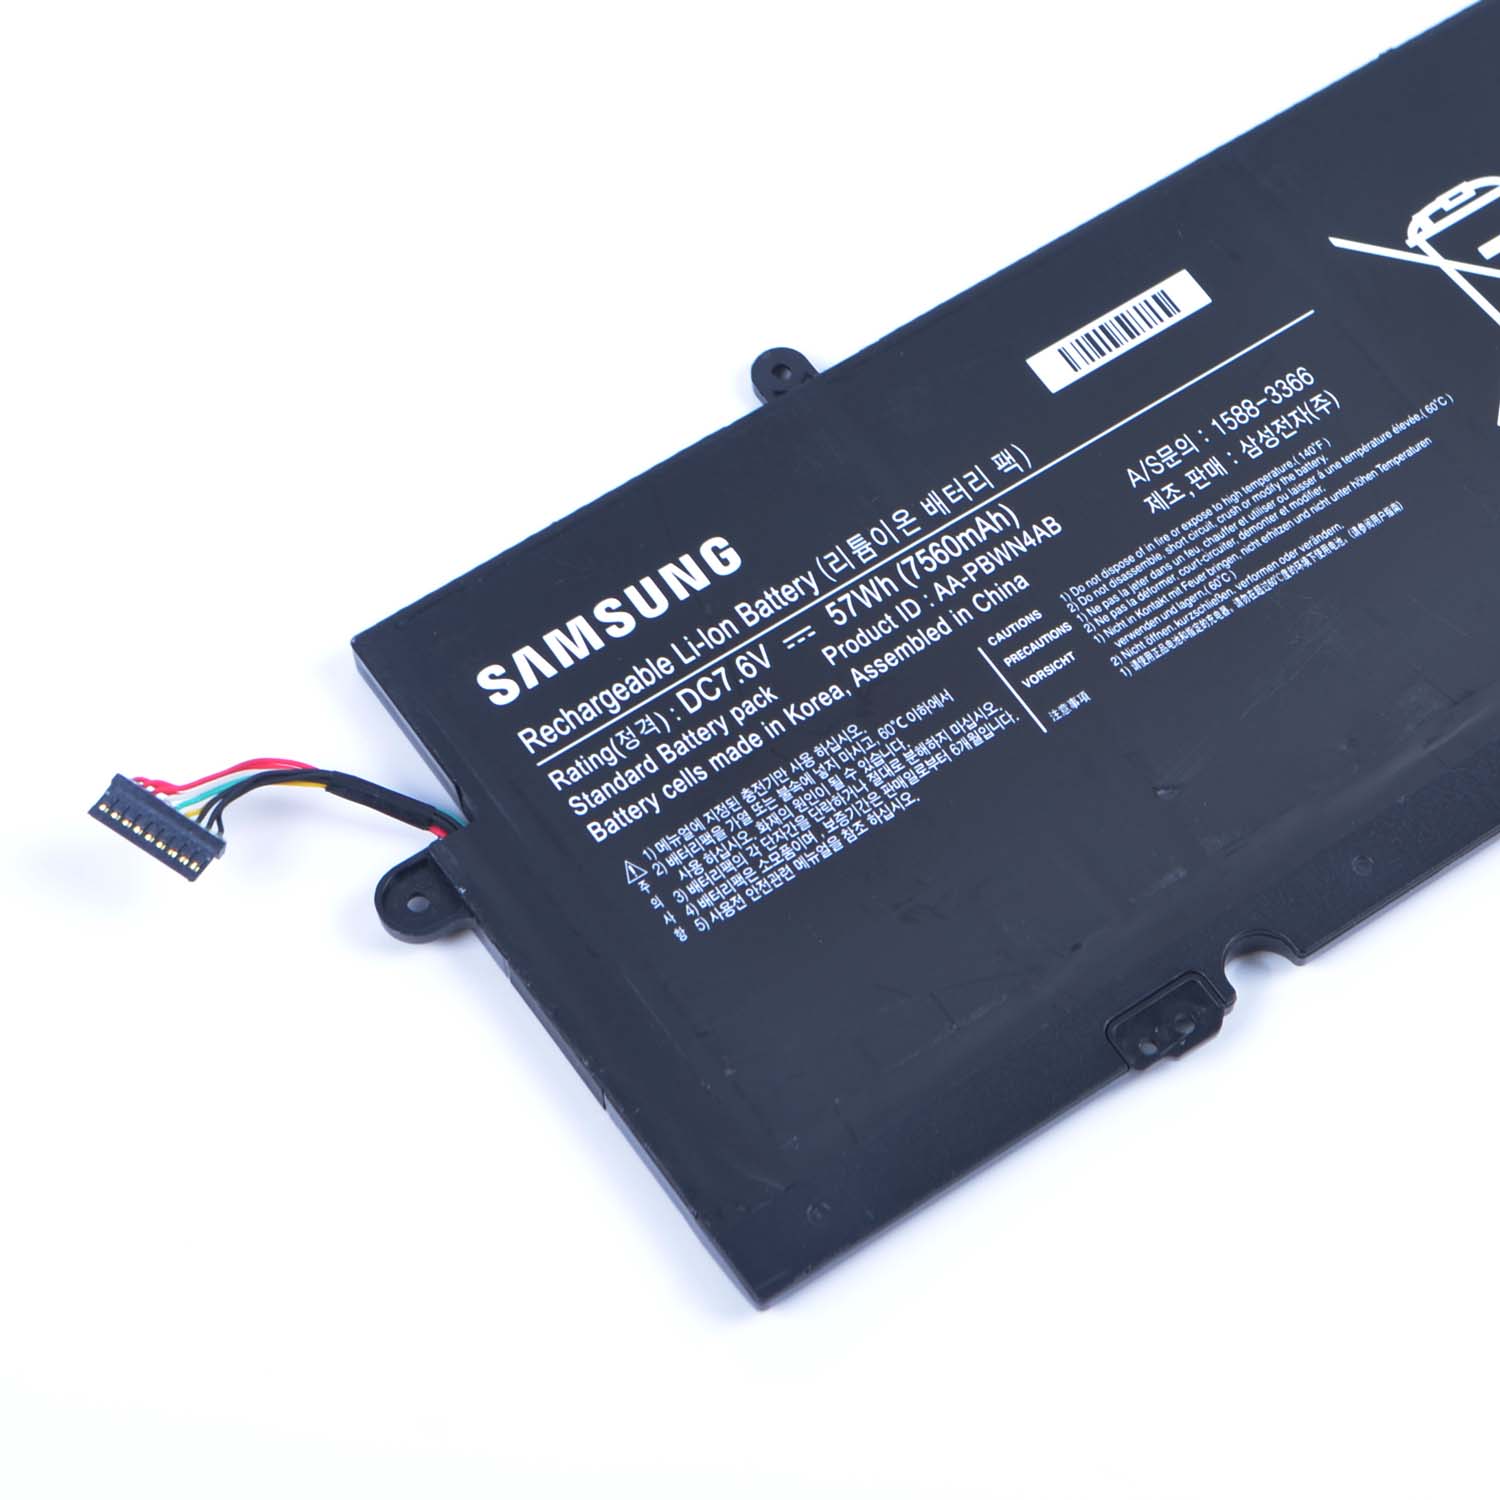 Samsung 730U3E-A01 batería